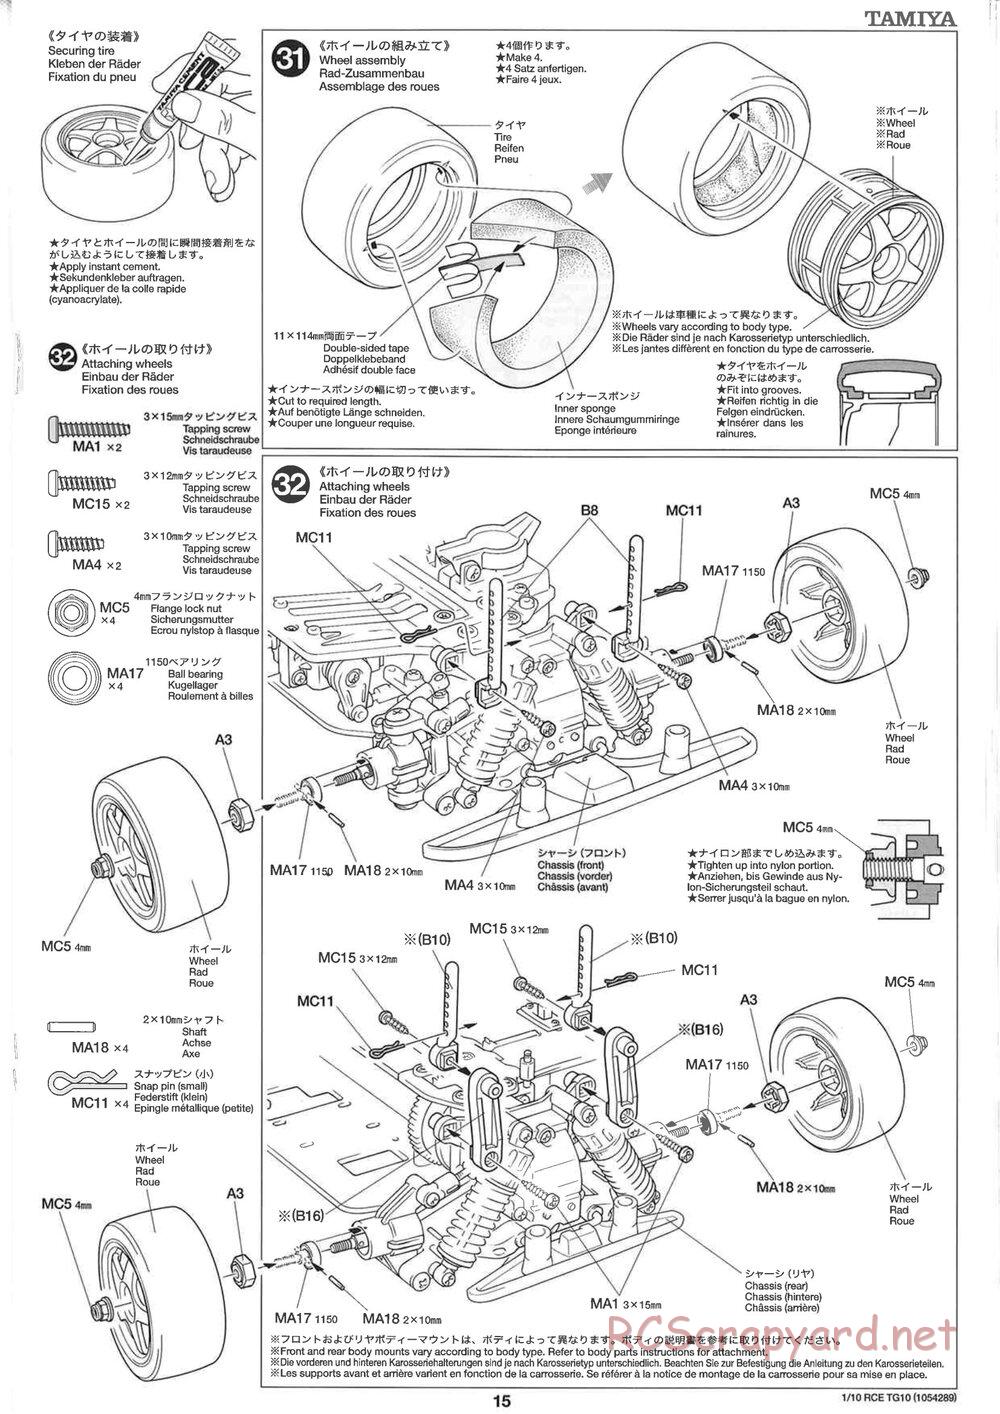 Tamiya - TG10 Mk.1 Chassis - Manual - Page 15